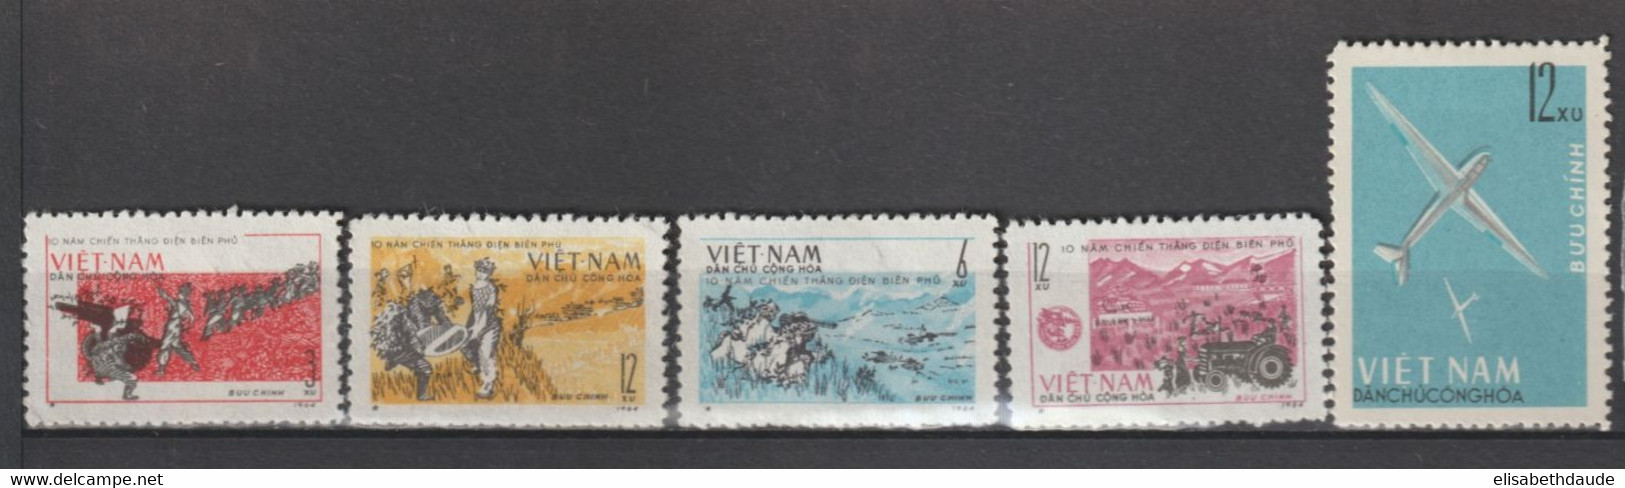 NORD VIETNAM - 1964 - ANNEE COMPLETE ! YVERT N°355/402 (SERIE FLEURS IMPERF !) NEUFS - COTE = 132 EUR - 3 PAGES - Vietnam